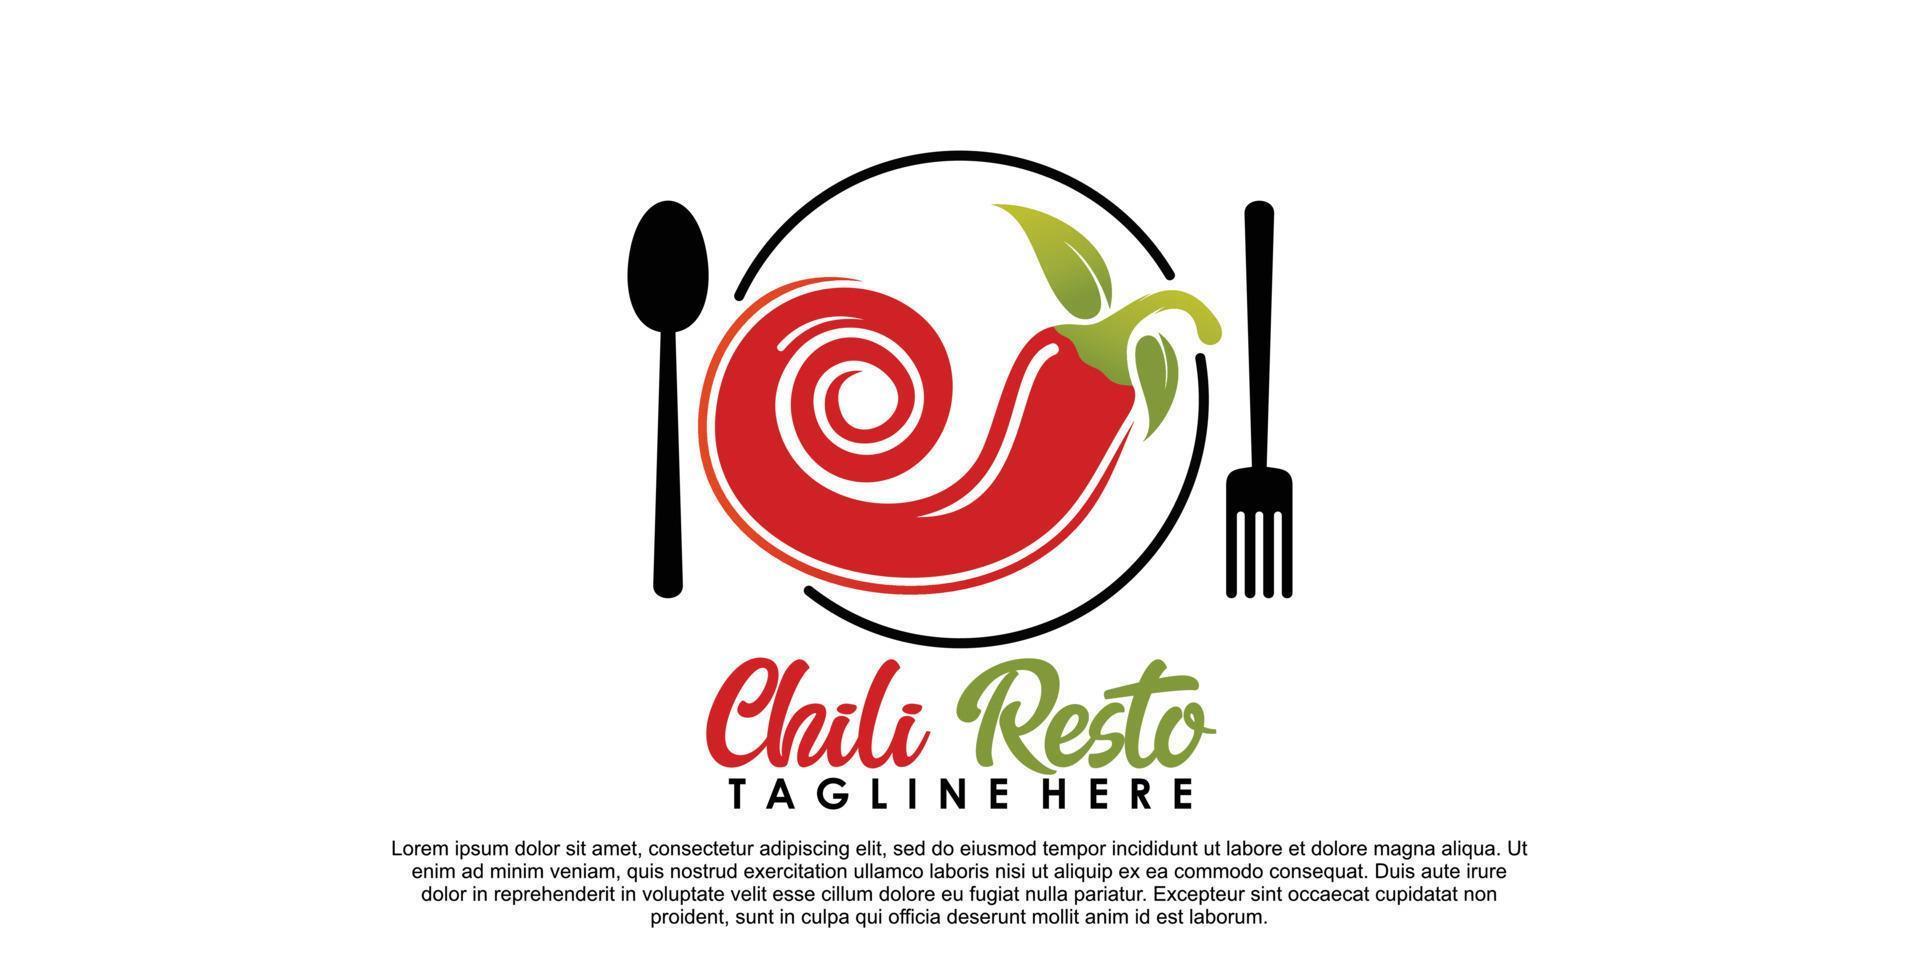 Chili-Resto-Logo-Design mit kreativem Konzept Premium-Vektor Teil 2 vektor